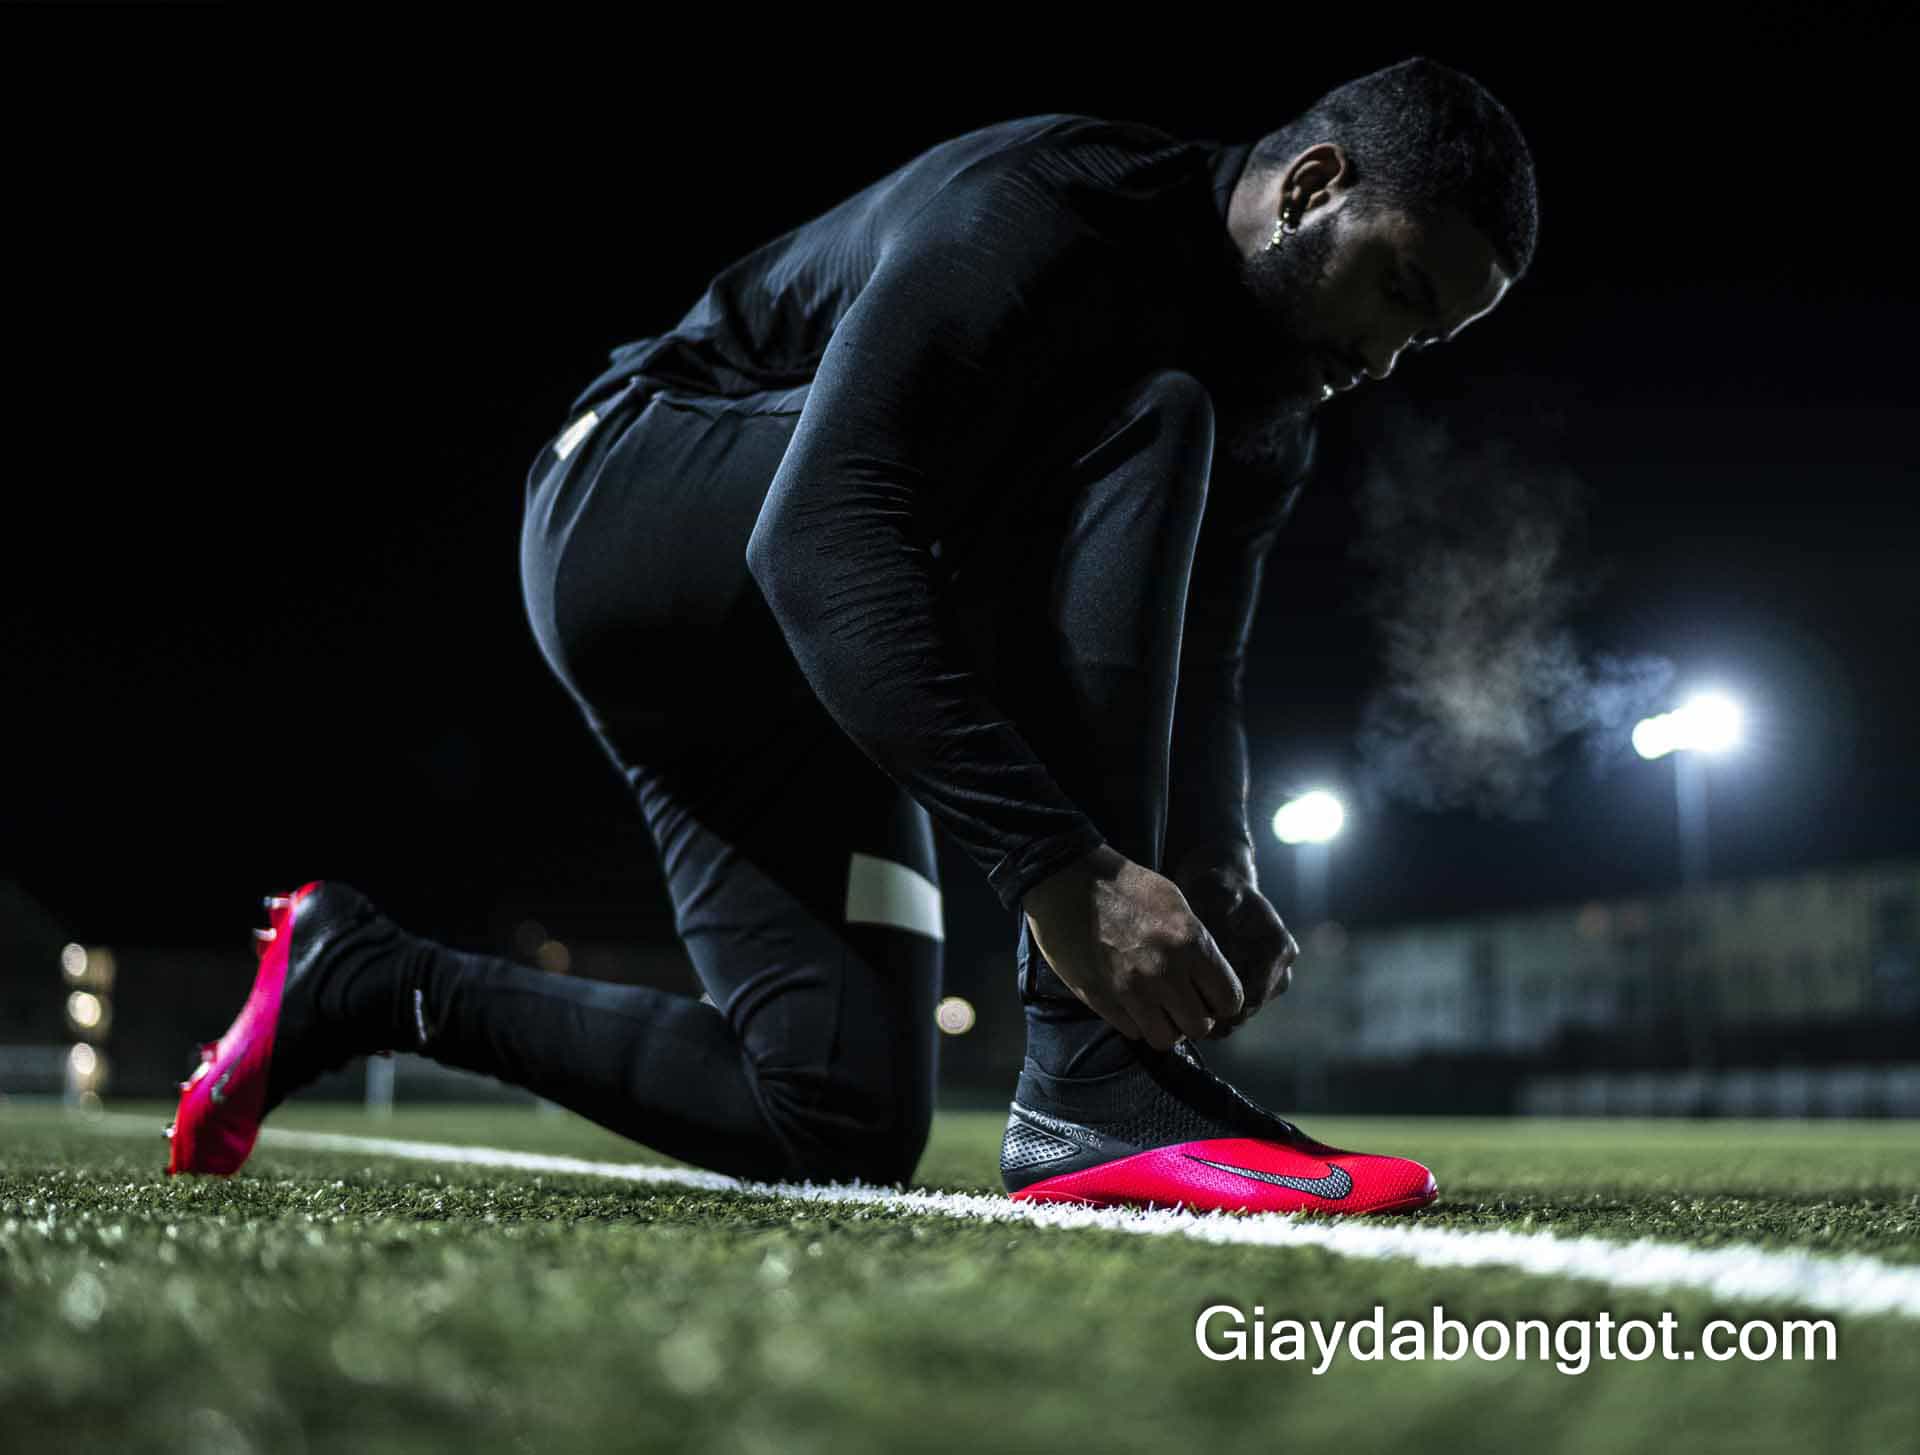 Xỏ lên chân mẫu giày đá banh Nike Phantom VSN năm 2020 mới nhất